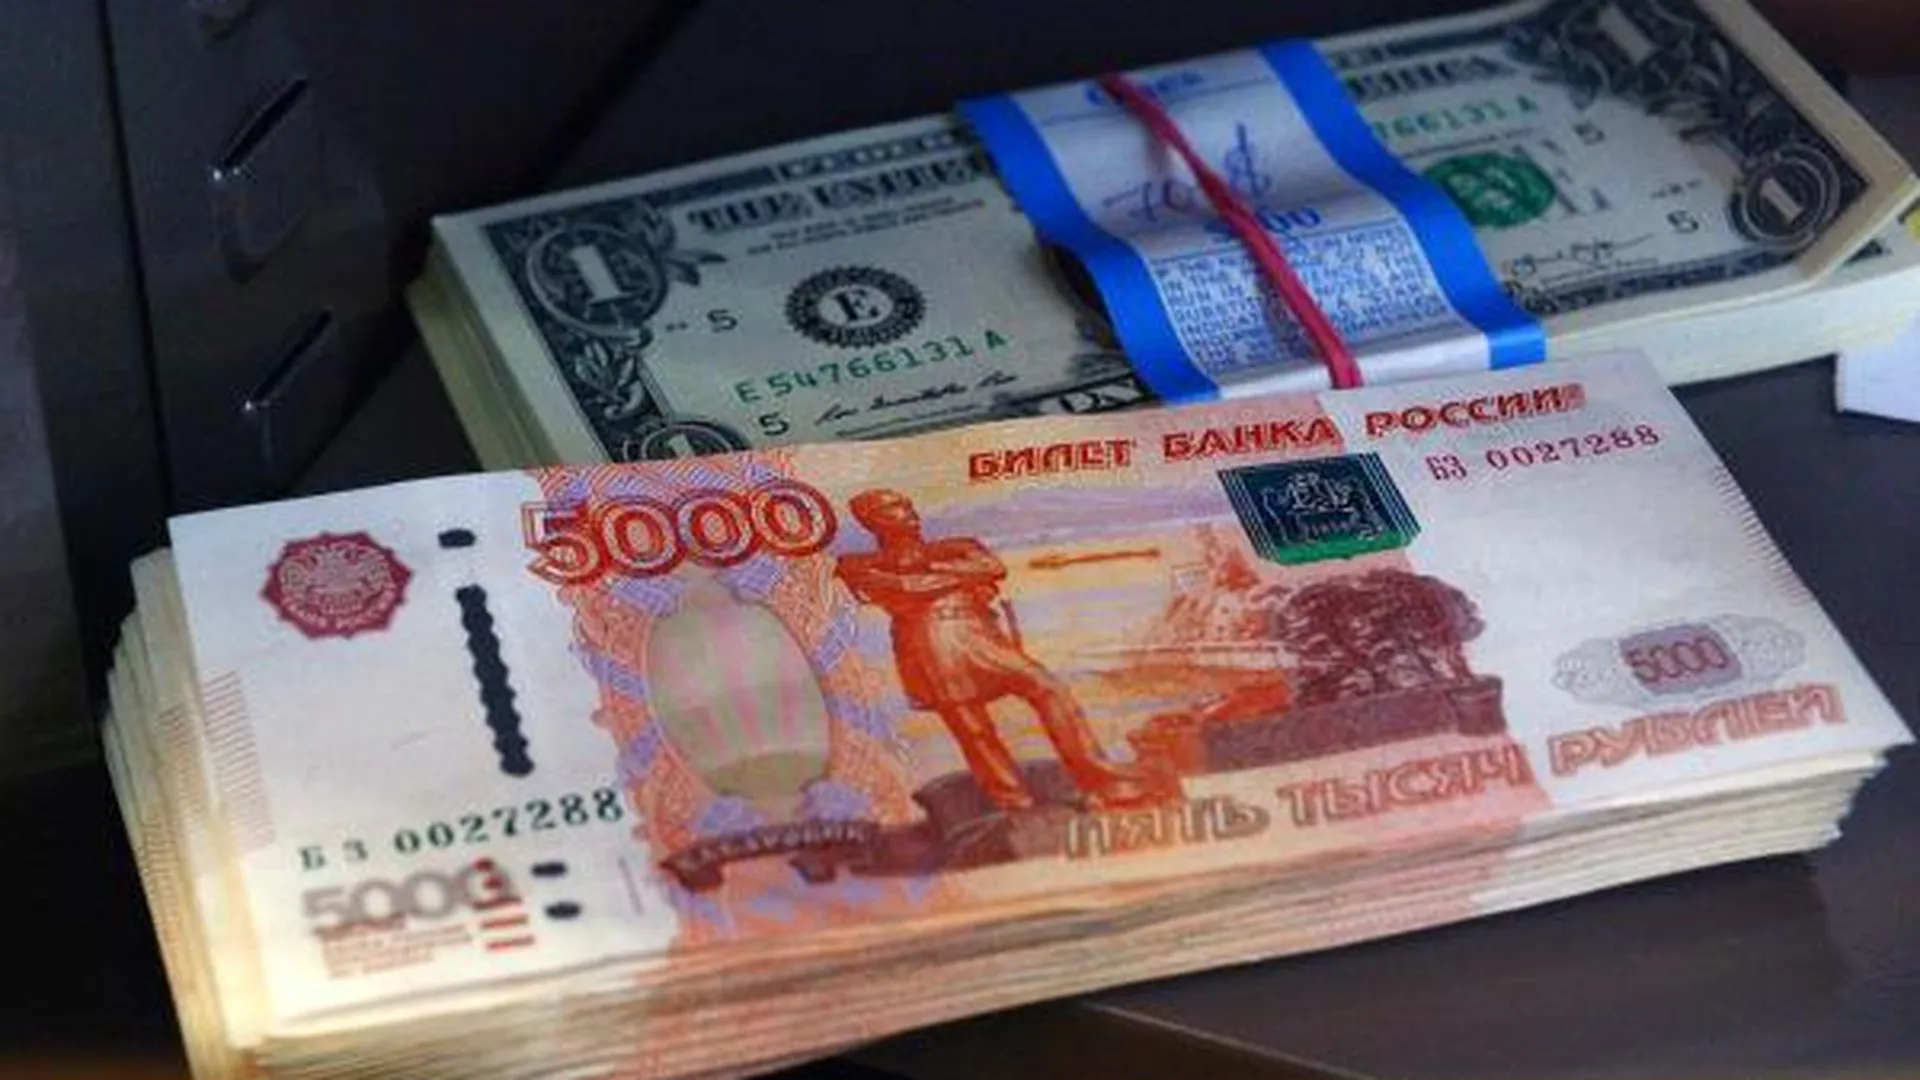 Более 6 млн руб вынесли бандиты из дома бизнесмена в Одинцовском районе